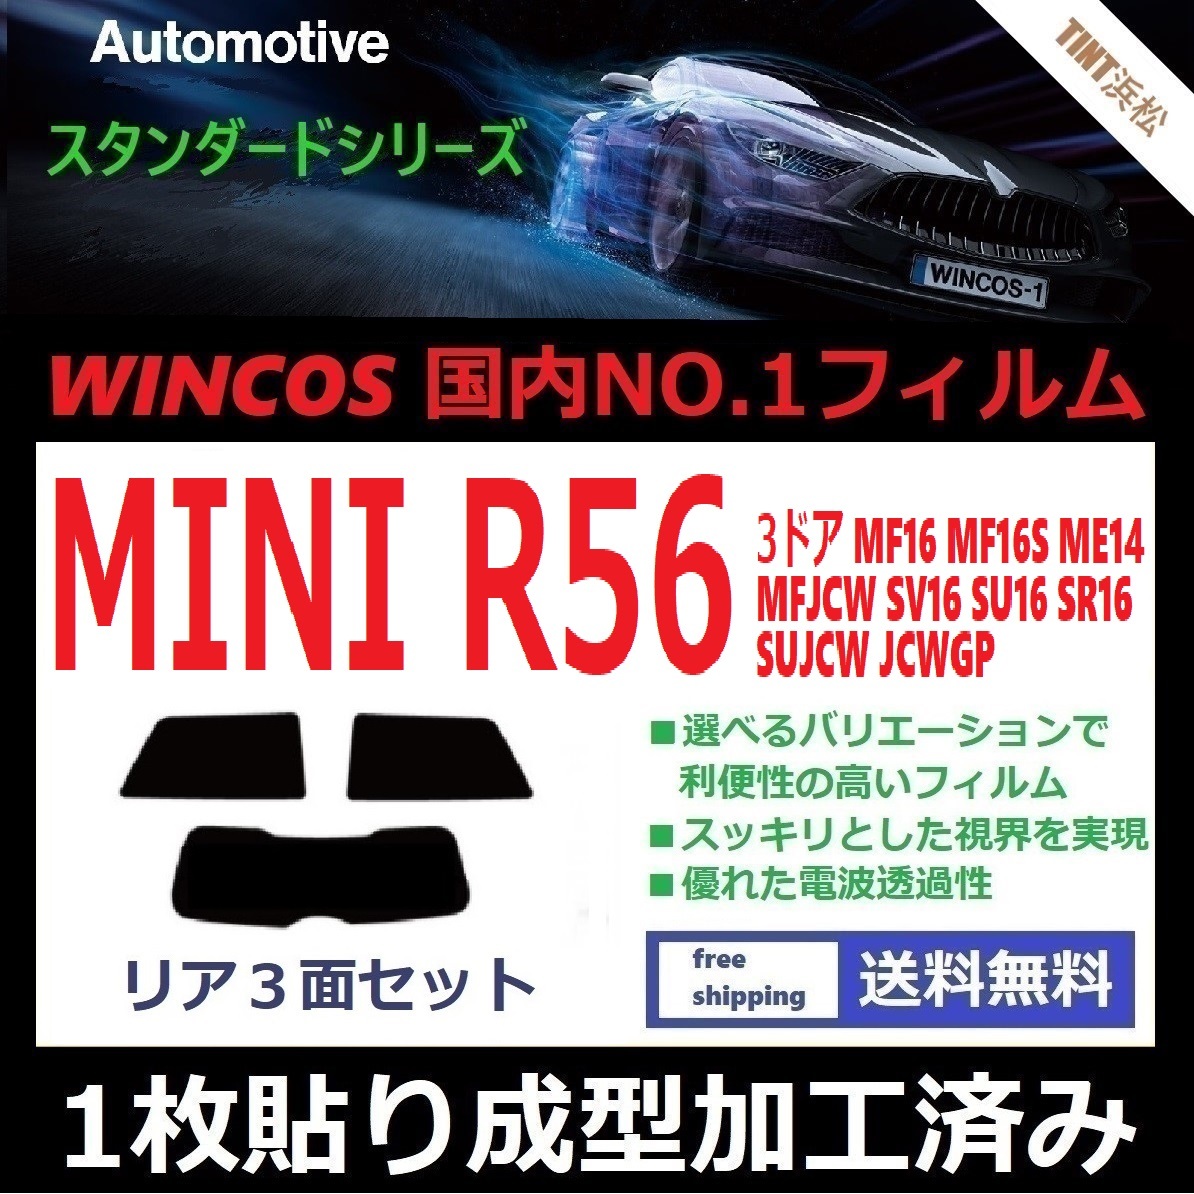 １枚貼り成型加工済みフィルム MINI ミニ 3ドア (R56系 MF16 ME14 MFJCW SV16 SU16 他) 【WINCOS】 近赤外線を62％カット ドライ成型